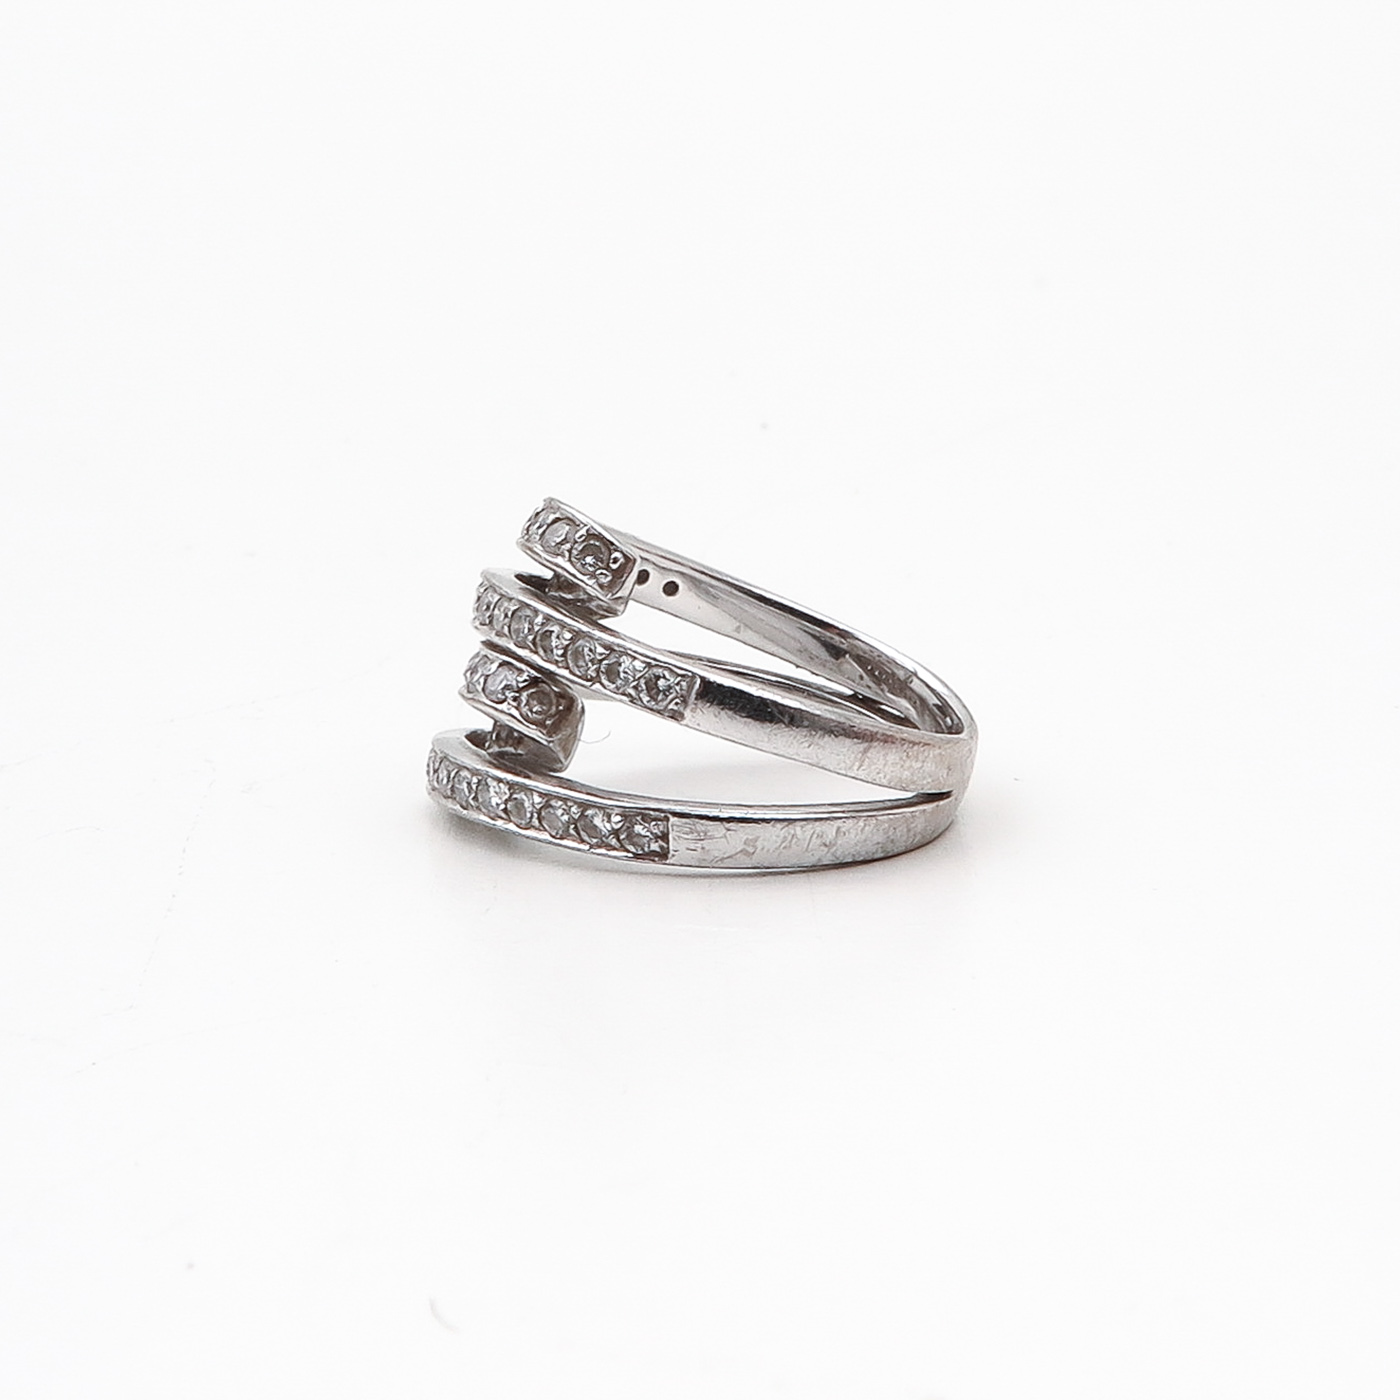 An 18KG Ladies Diamond Ring - Image 2 of 2